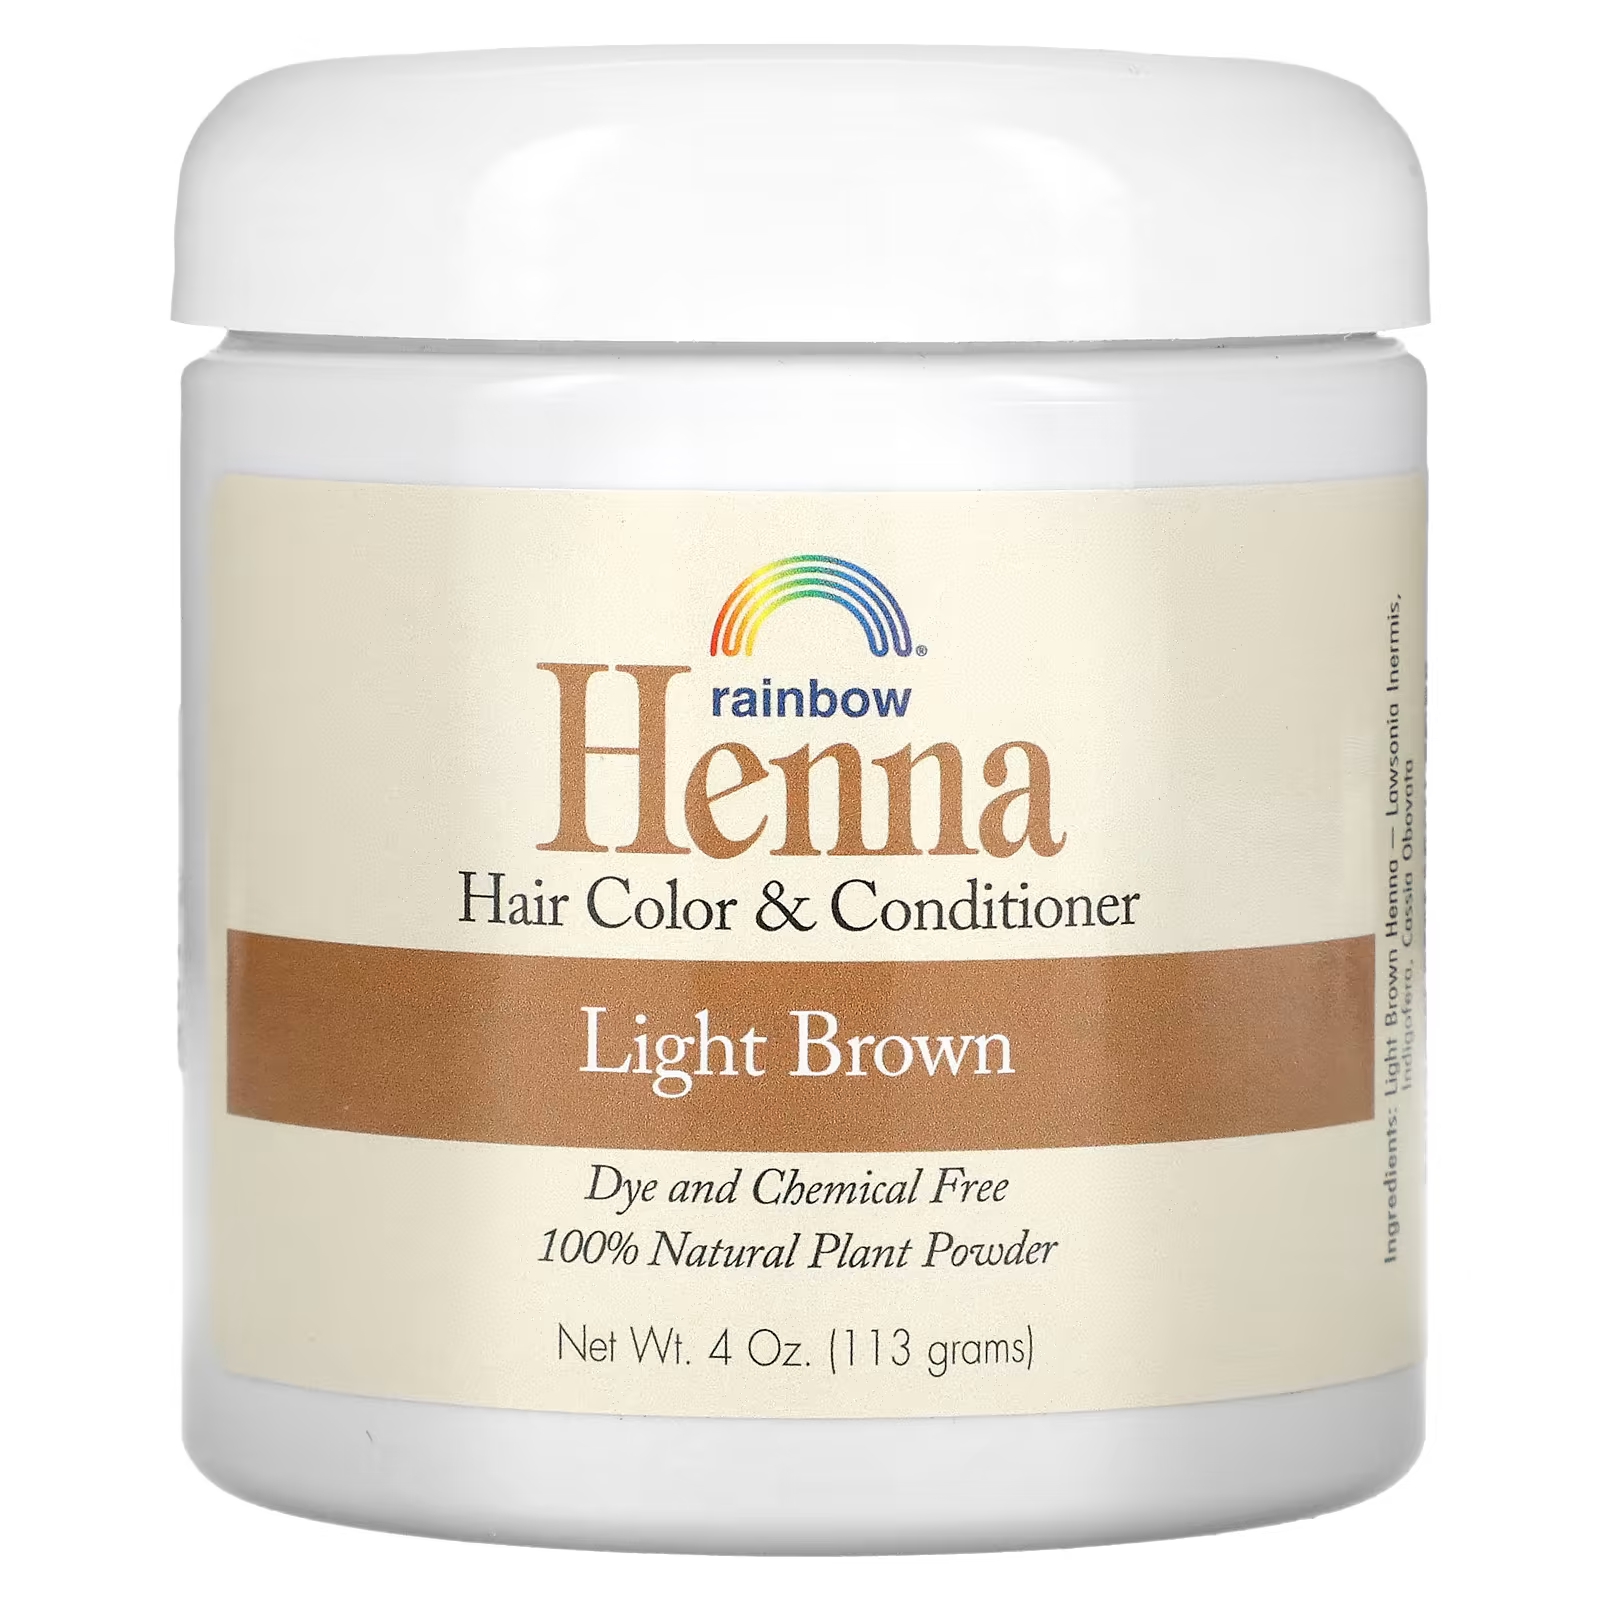 Краска и кондиционер для волос Rainbow Research Henna, светло-коричневый, 4 унции (113 г) rainbow research henna 100% растительная краска для волос и кондиционер персидский блонд 4 унции 113 г в форме порошка